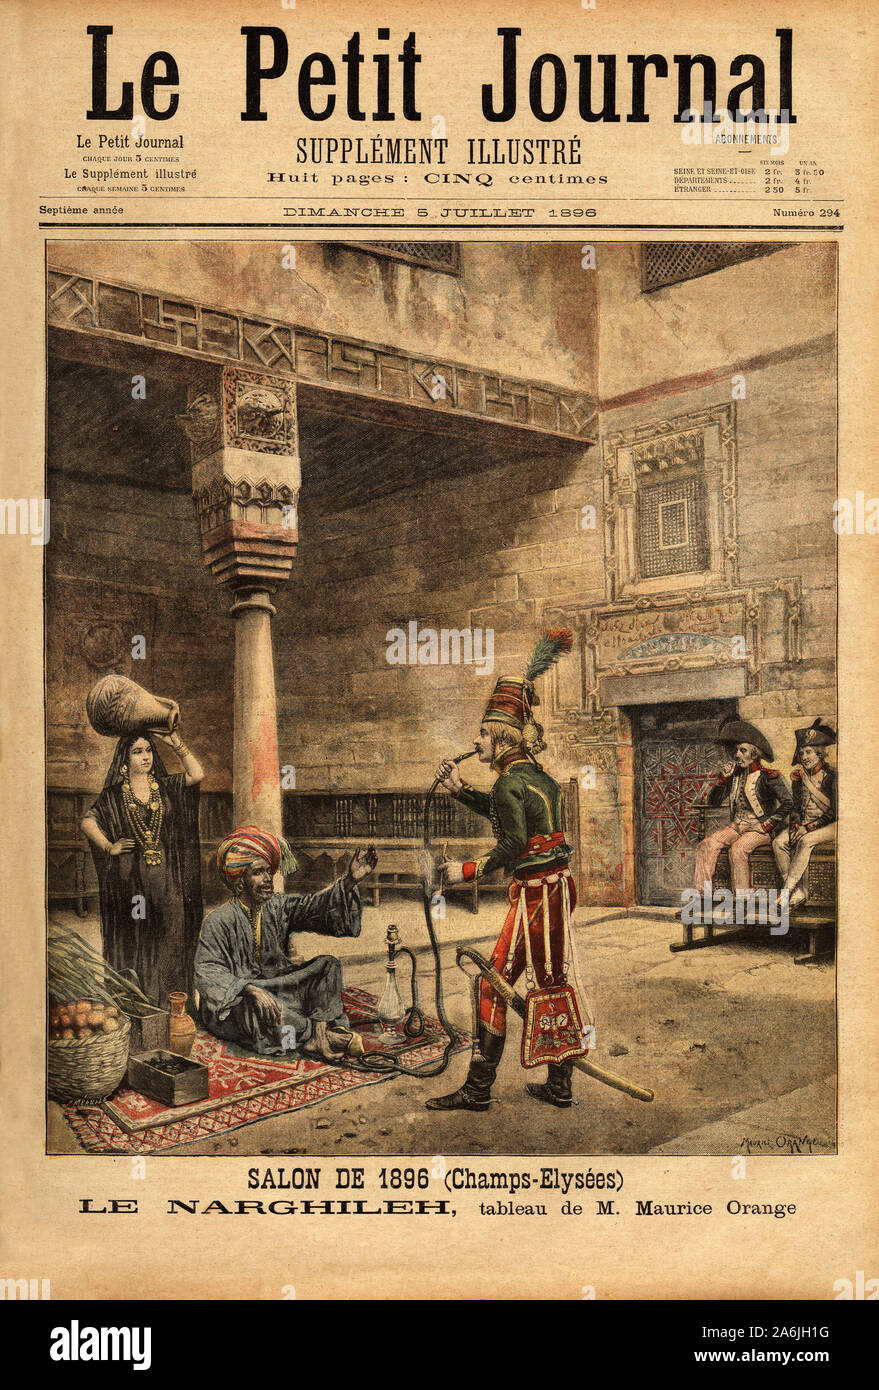 Pendant la campagne de France en Egypte, un soldat interroge un indigene sur sa pipe a eau, le narguile ( ou narghileh ), d'apres un tableau de Mauric Stock Photo